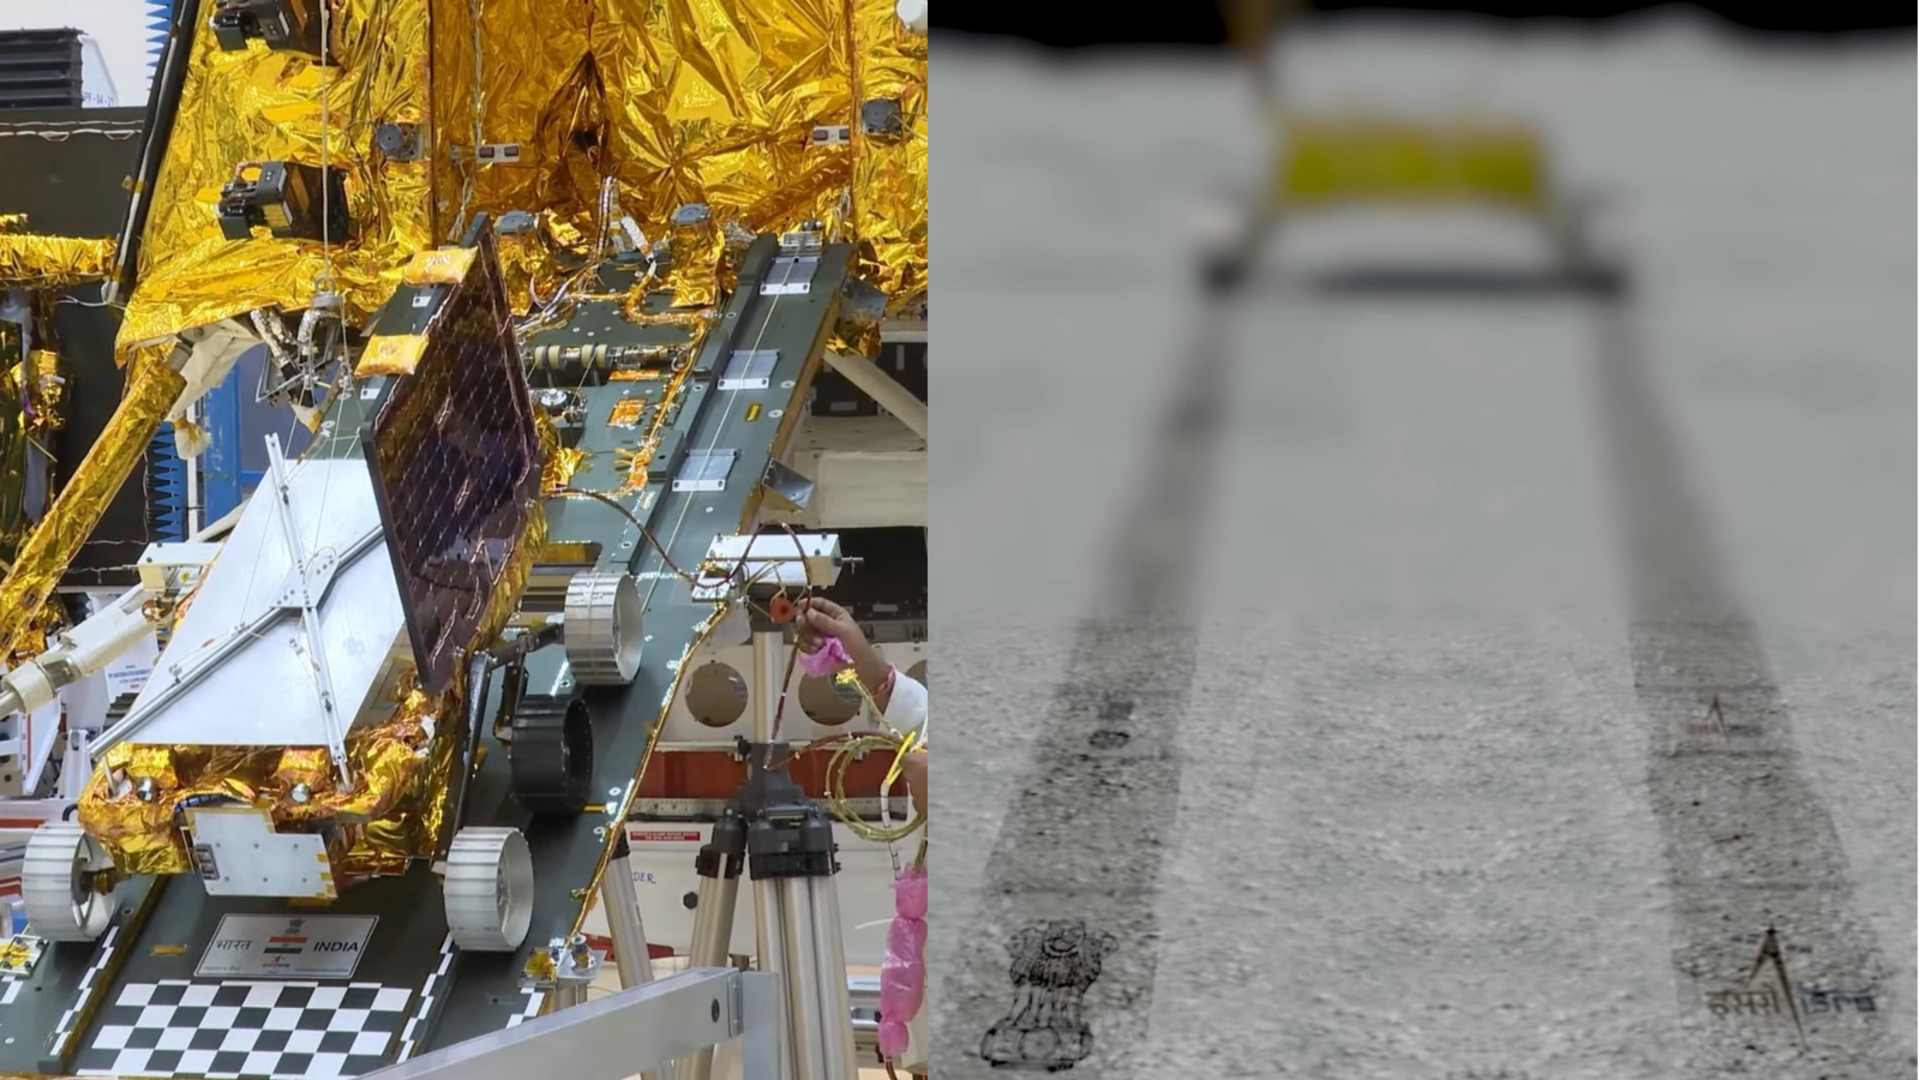 चंद्रयान-3 का रोवर चंद्रमा की सतह पर छोड़ेगा अशोक स्तंभ और ISRO के लोगो की छाप